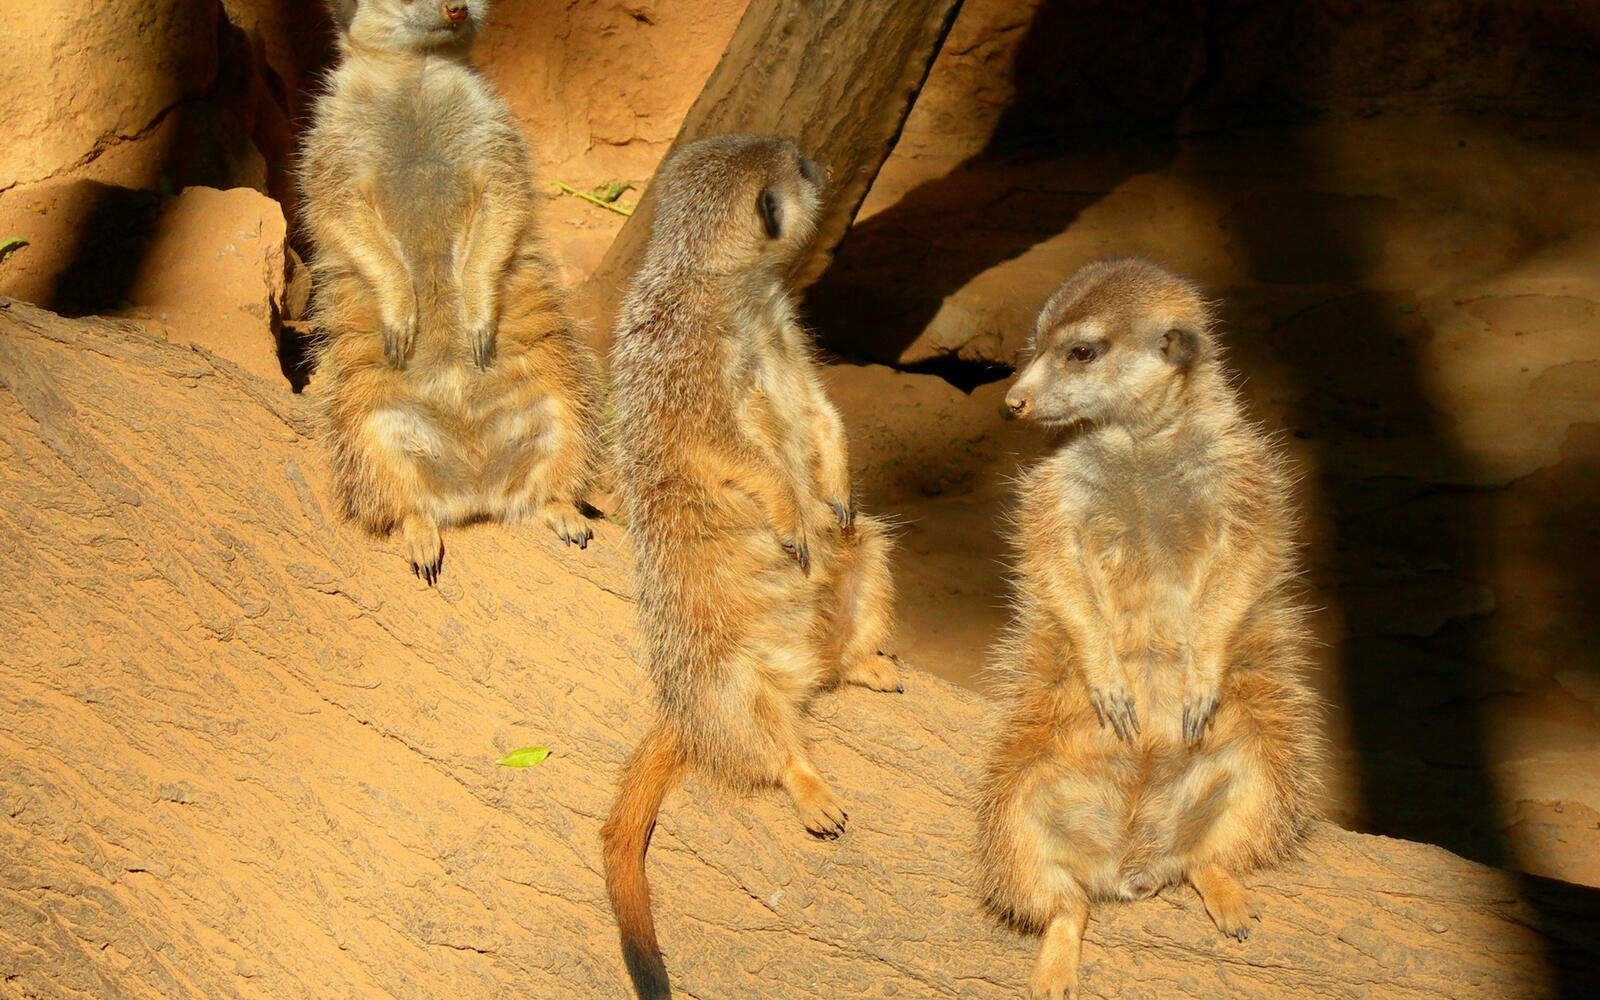 Wallpapers meerkats rodents tree on the desktop